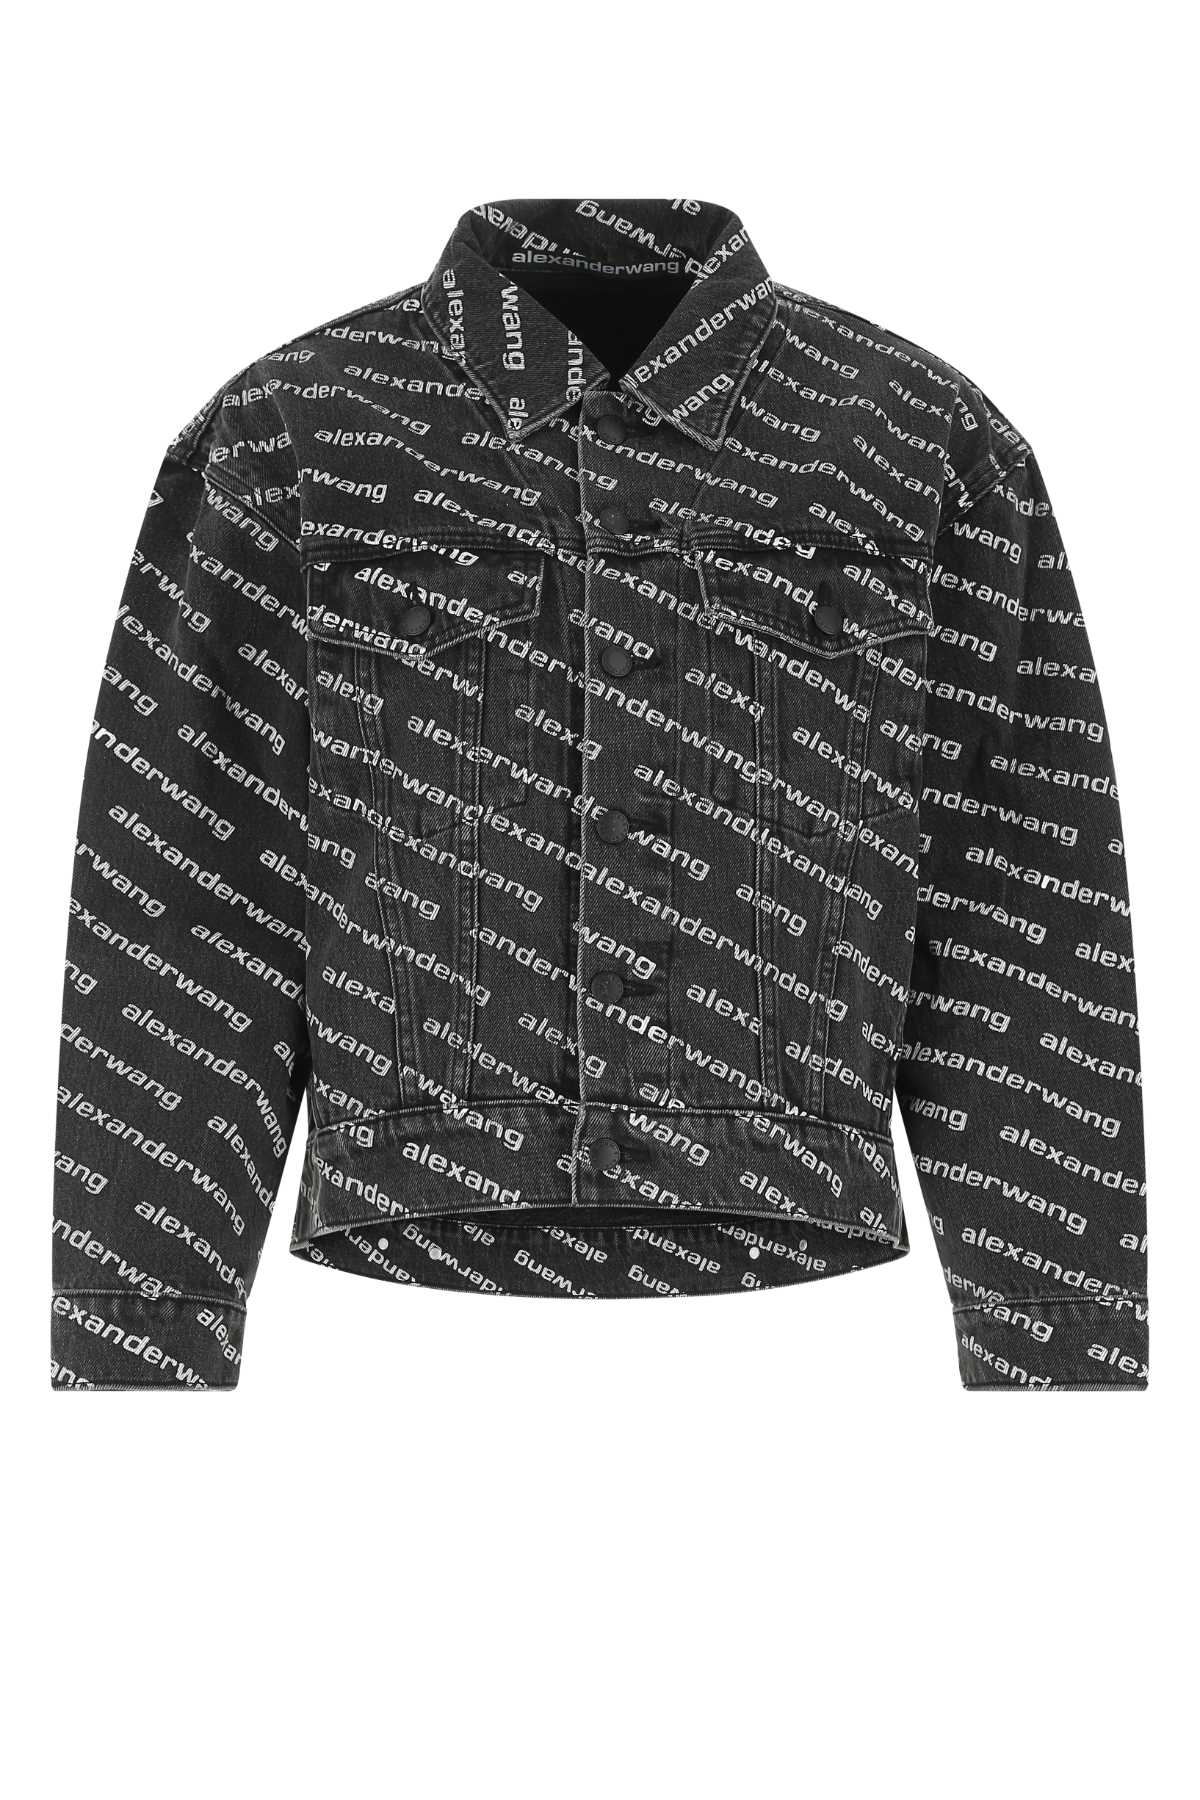 Alexander Wang Printed Denim Jacket In Greyagedwhite